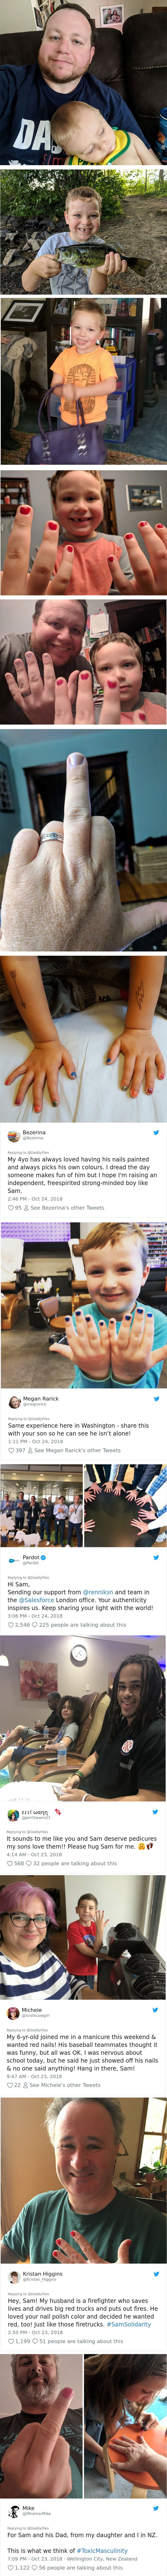 5-godišnjaka maltretirali zbog nalakiranih noktiju, a onda se dogodilo nešto neočekivano
